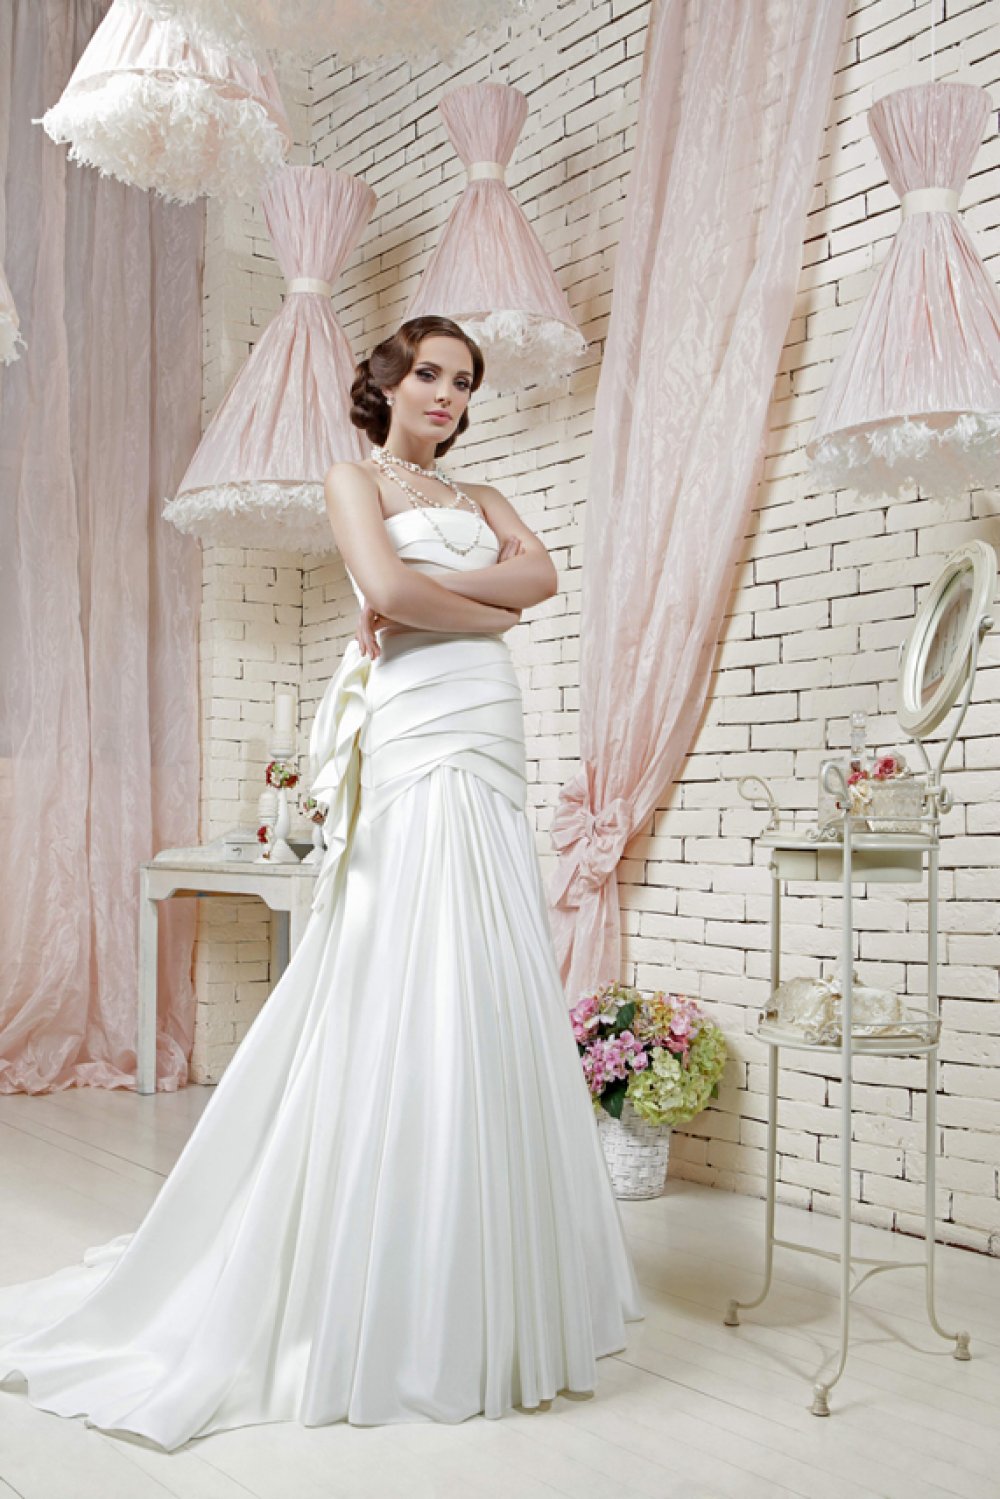 Свадебное платье "Скарлетт", цвет айвори, размер 46. Из элементов декора только на спине имитация розы из ткани.